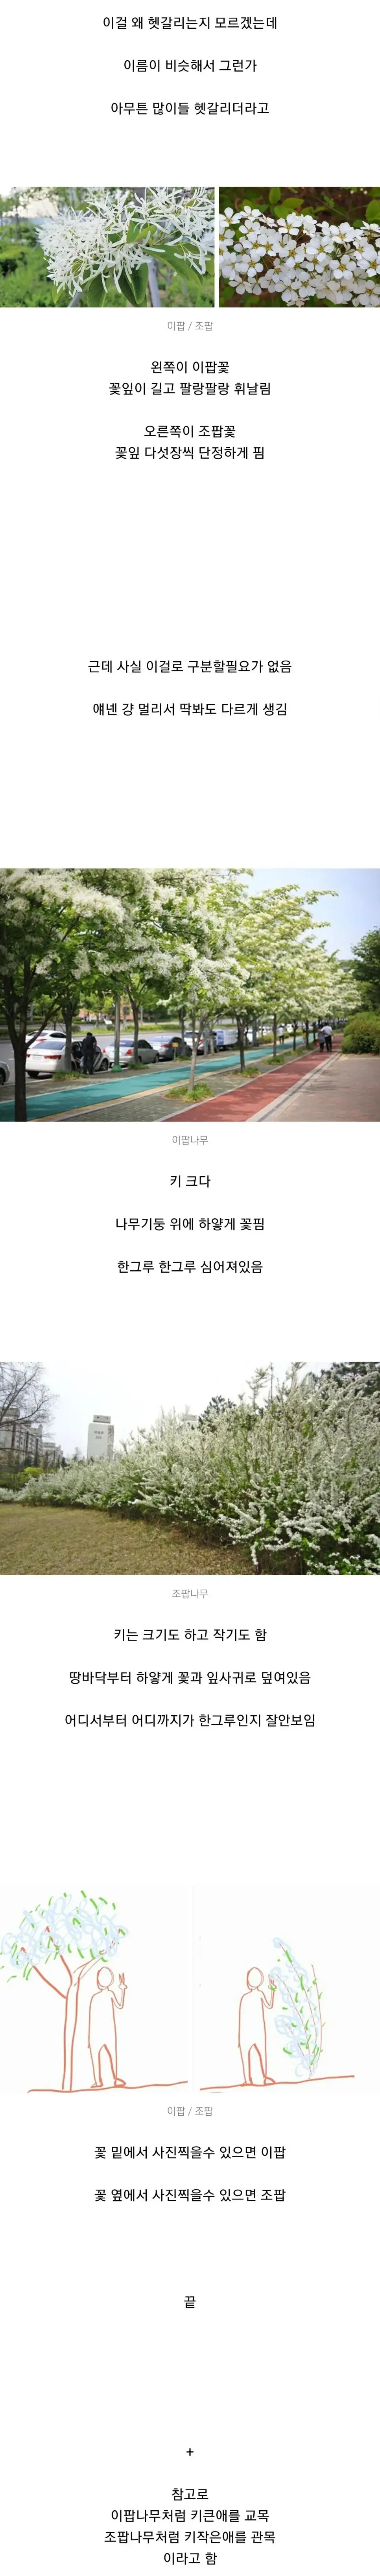 이팝나무 vs 조팝나무 쉬운구분법 | mbong.kr 엠봉